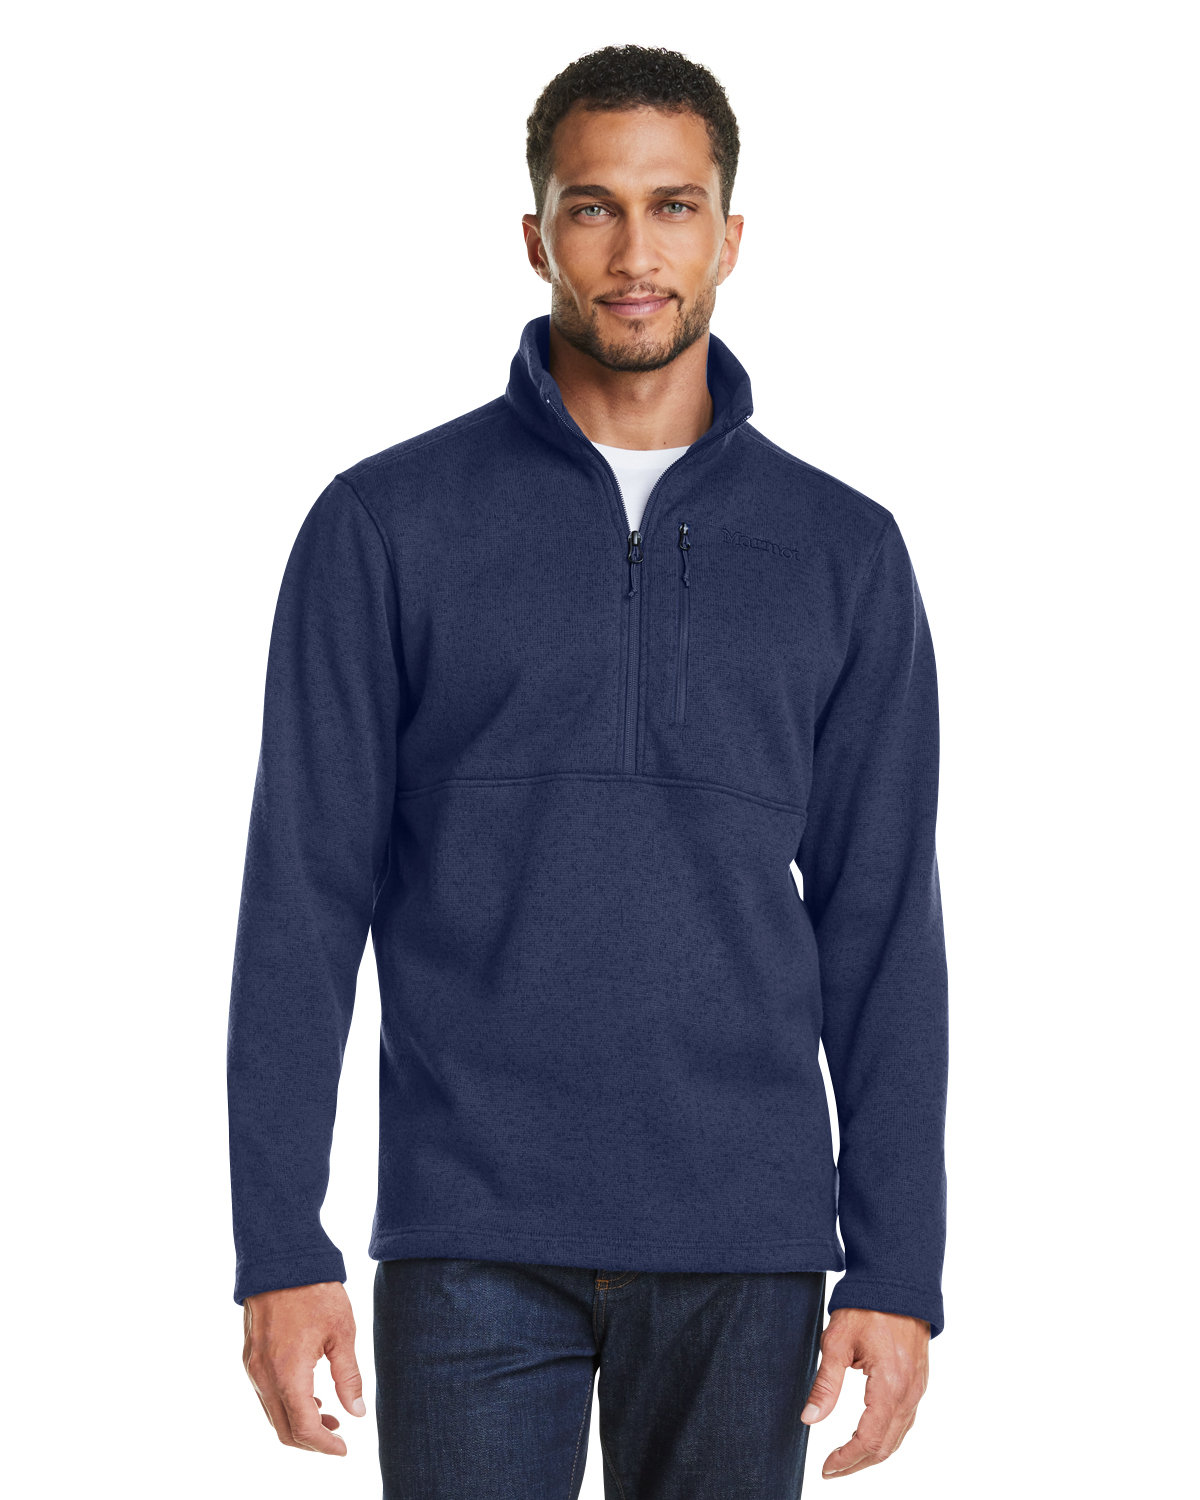 Men's Fishing Outerwear - Jackets, Vests & Half Zip Fleeces